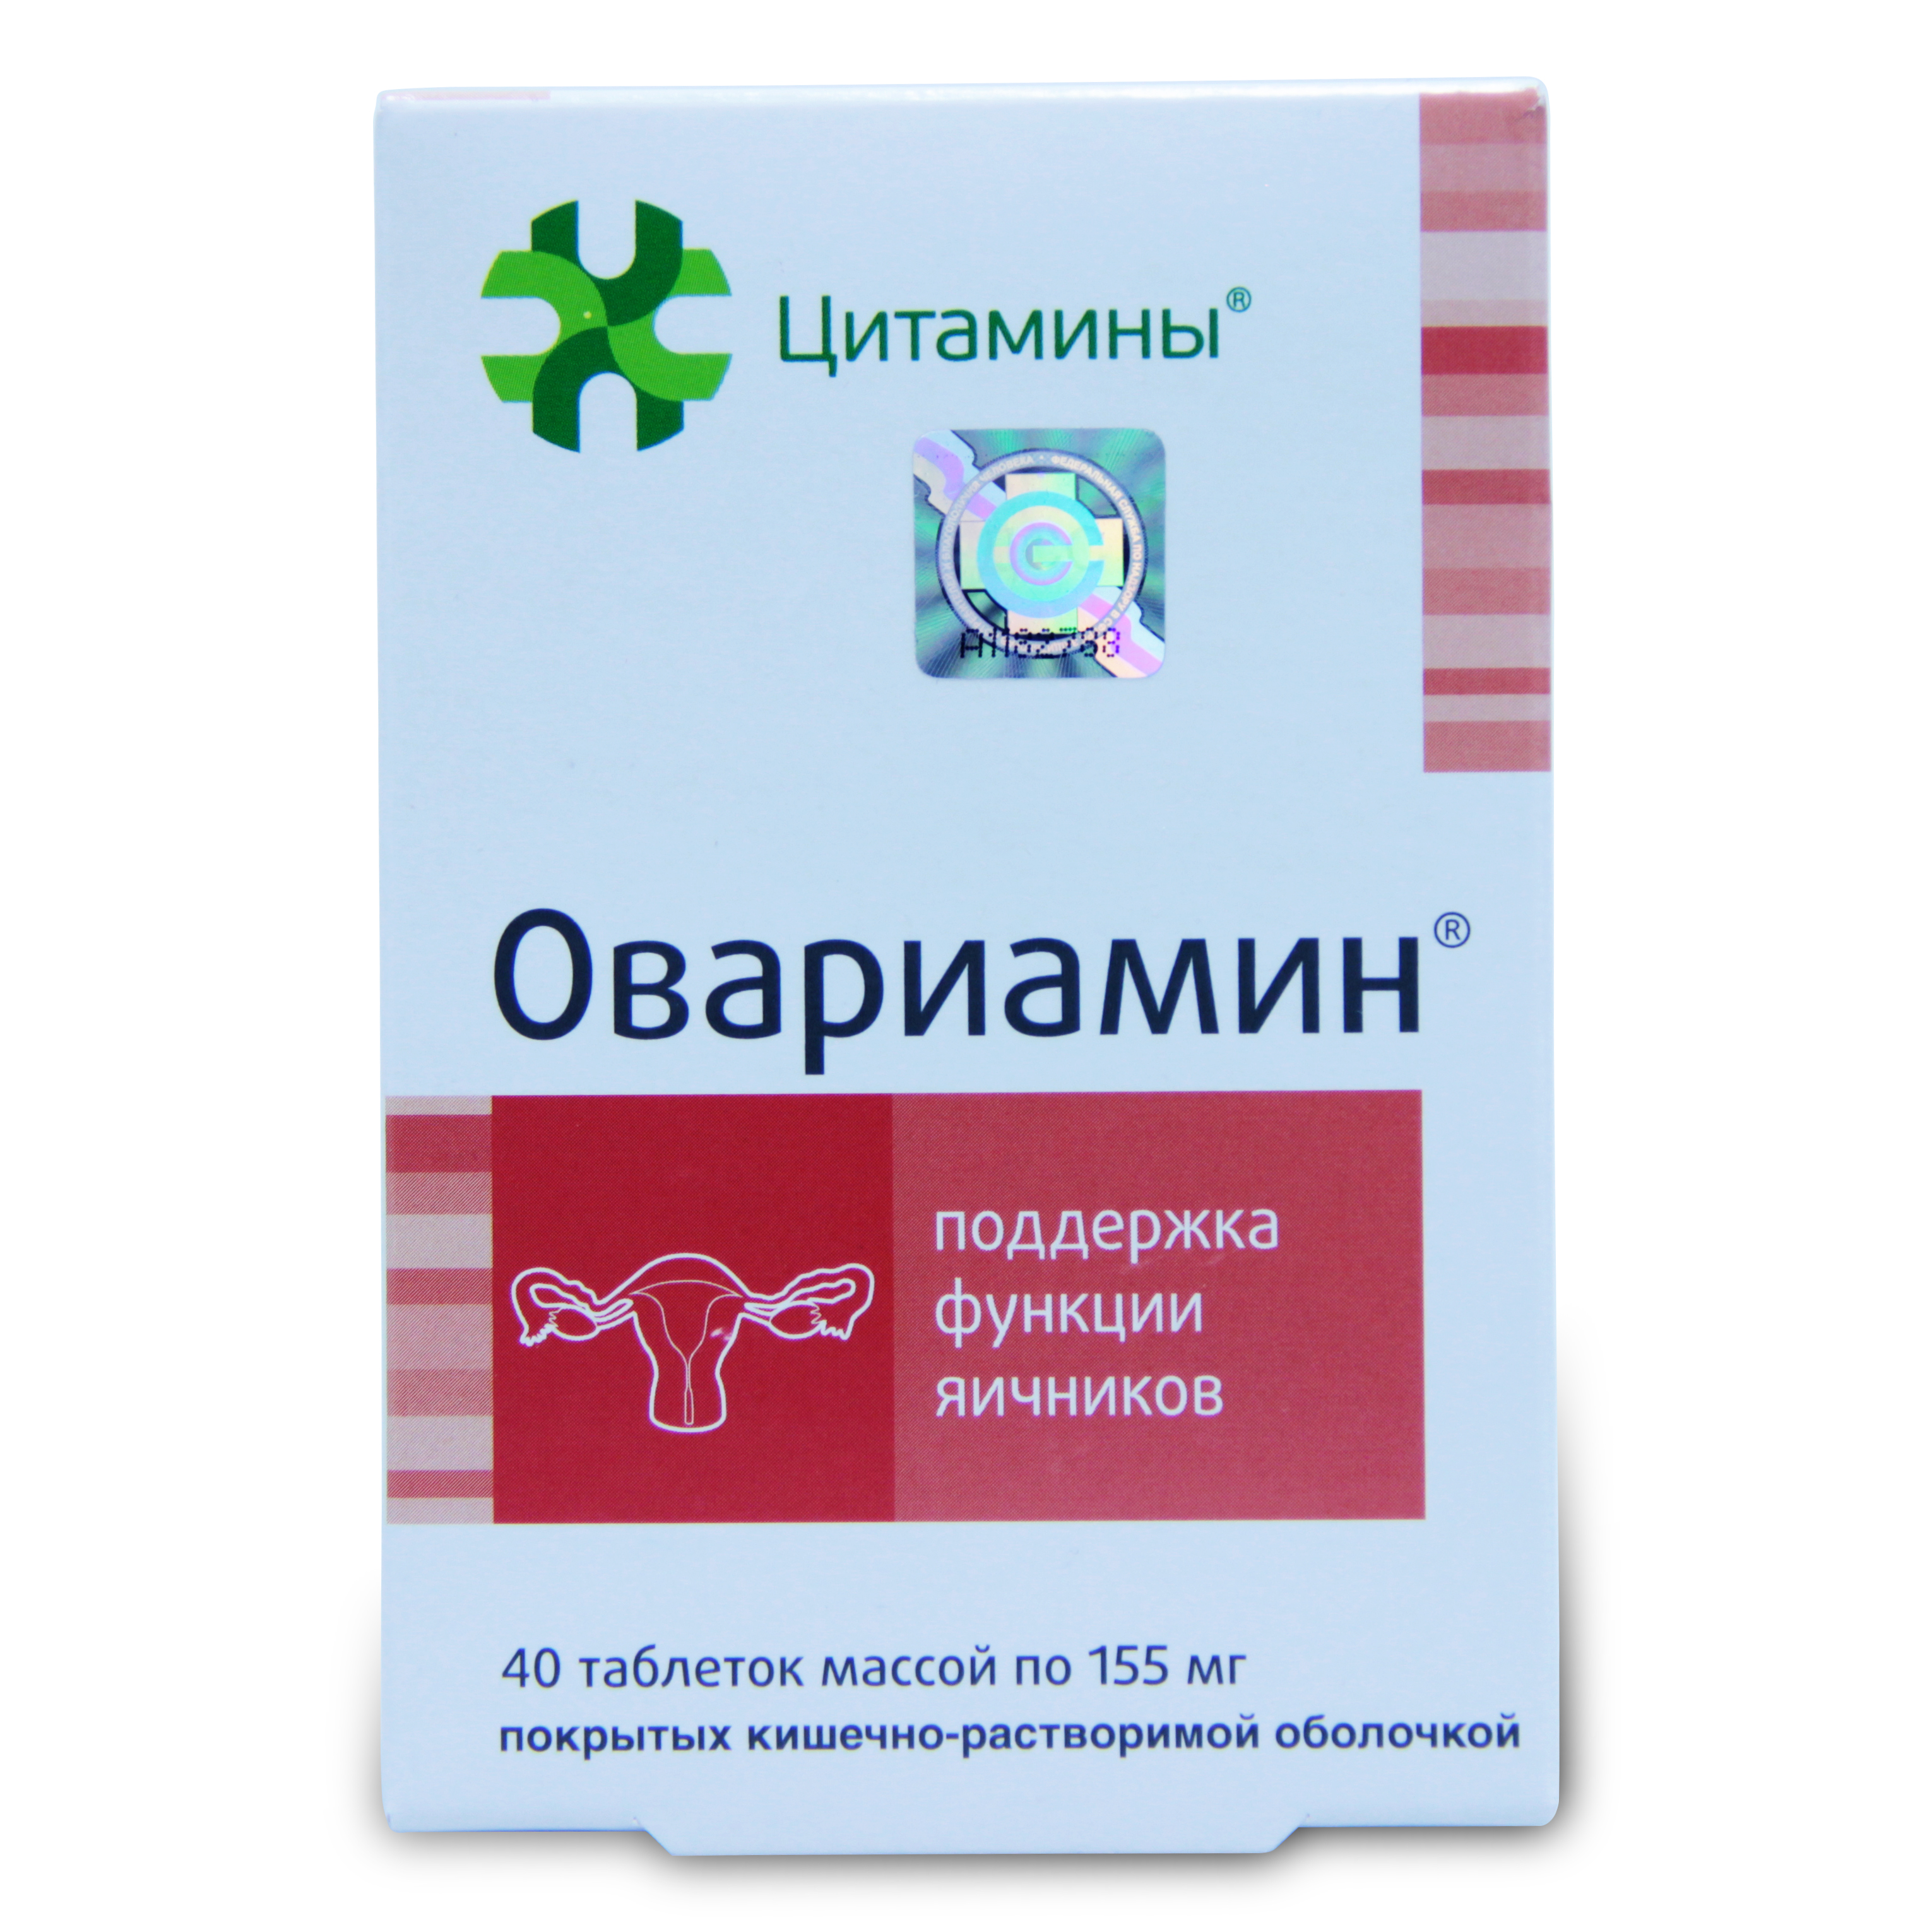 Овариамин - инструкция по применению таблеток при планировании беременности, состав, побочные эффекты и цена